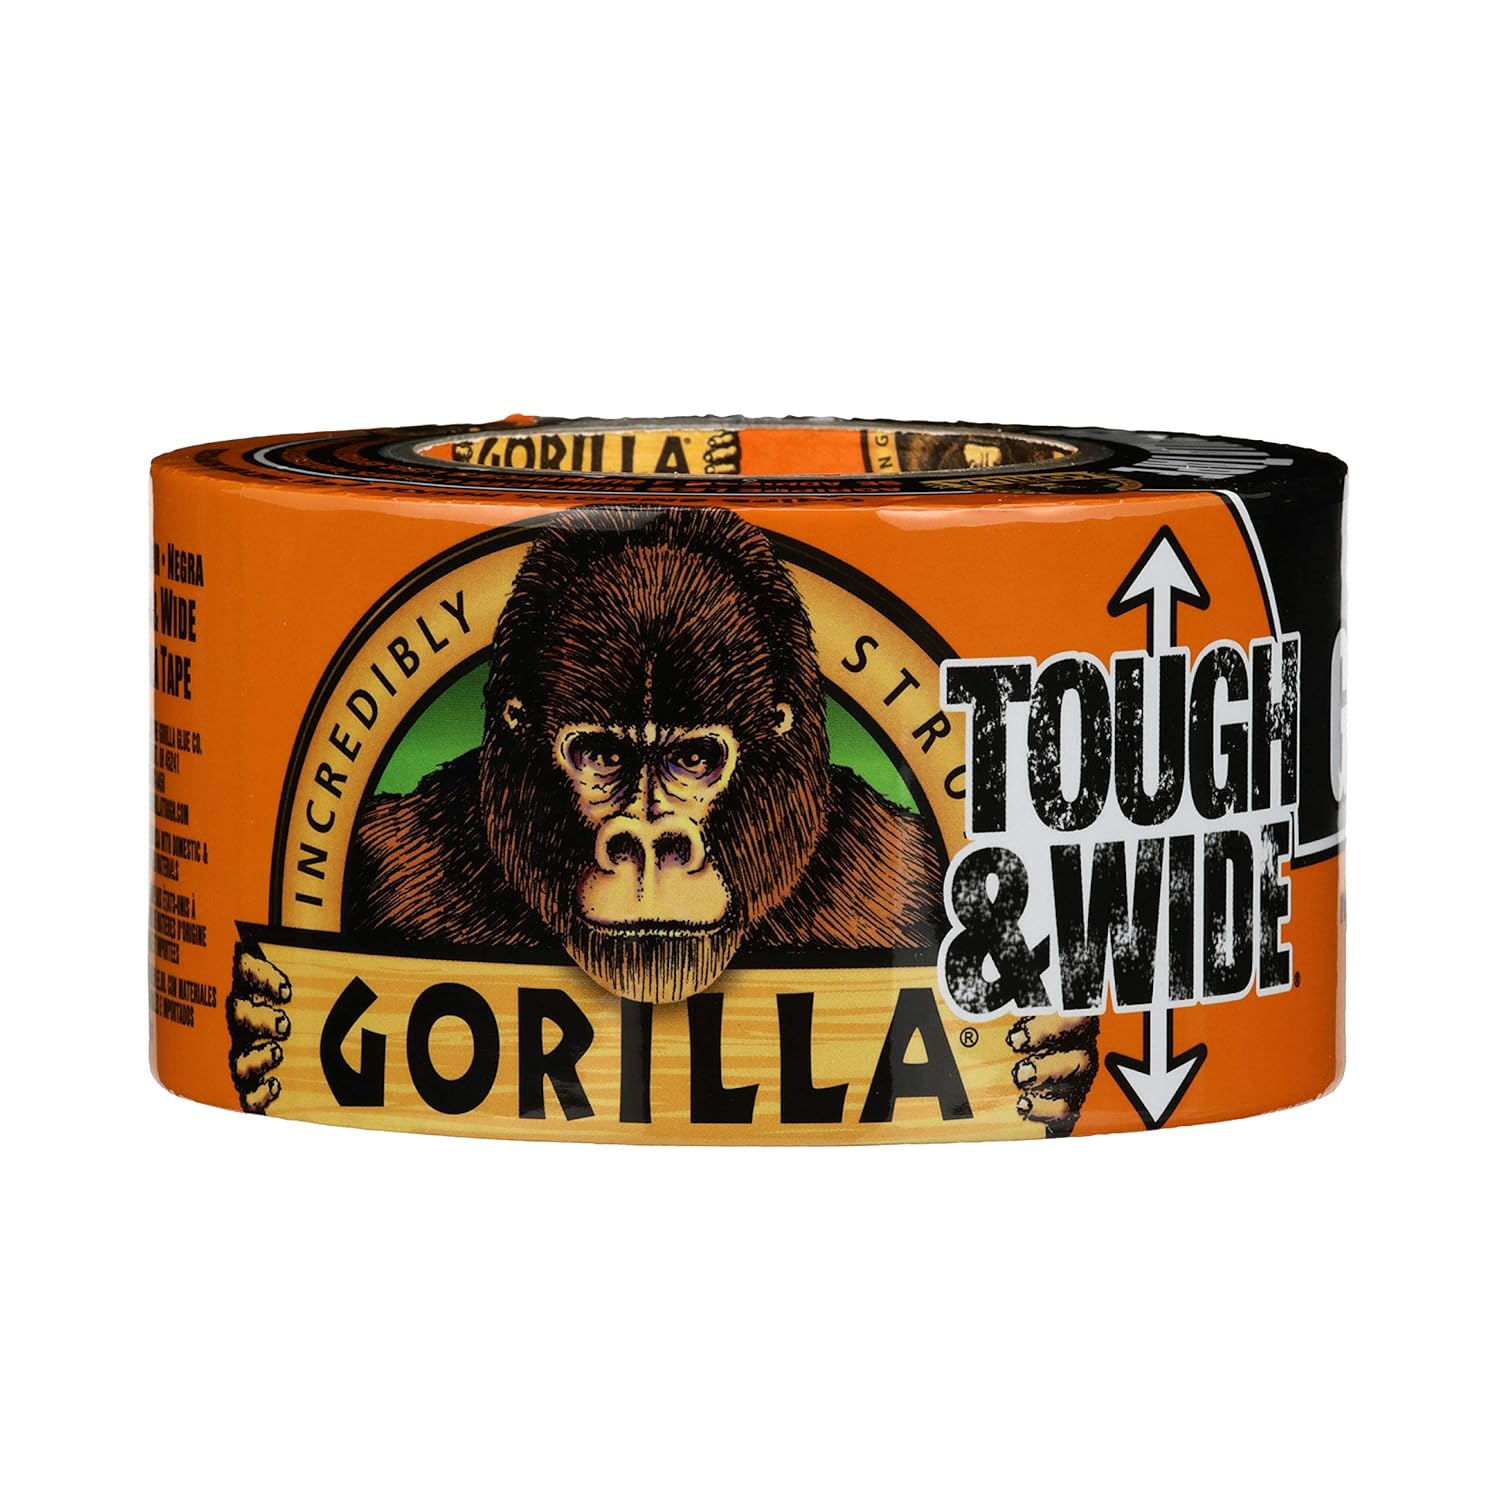 Gorilla Tape Tough and Wide 27m